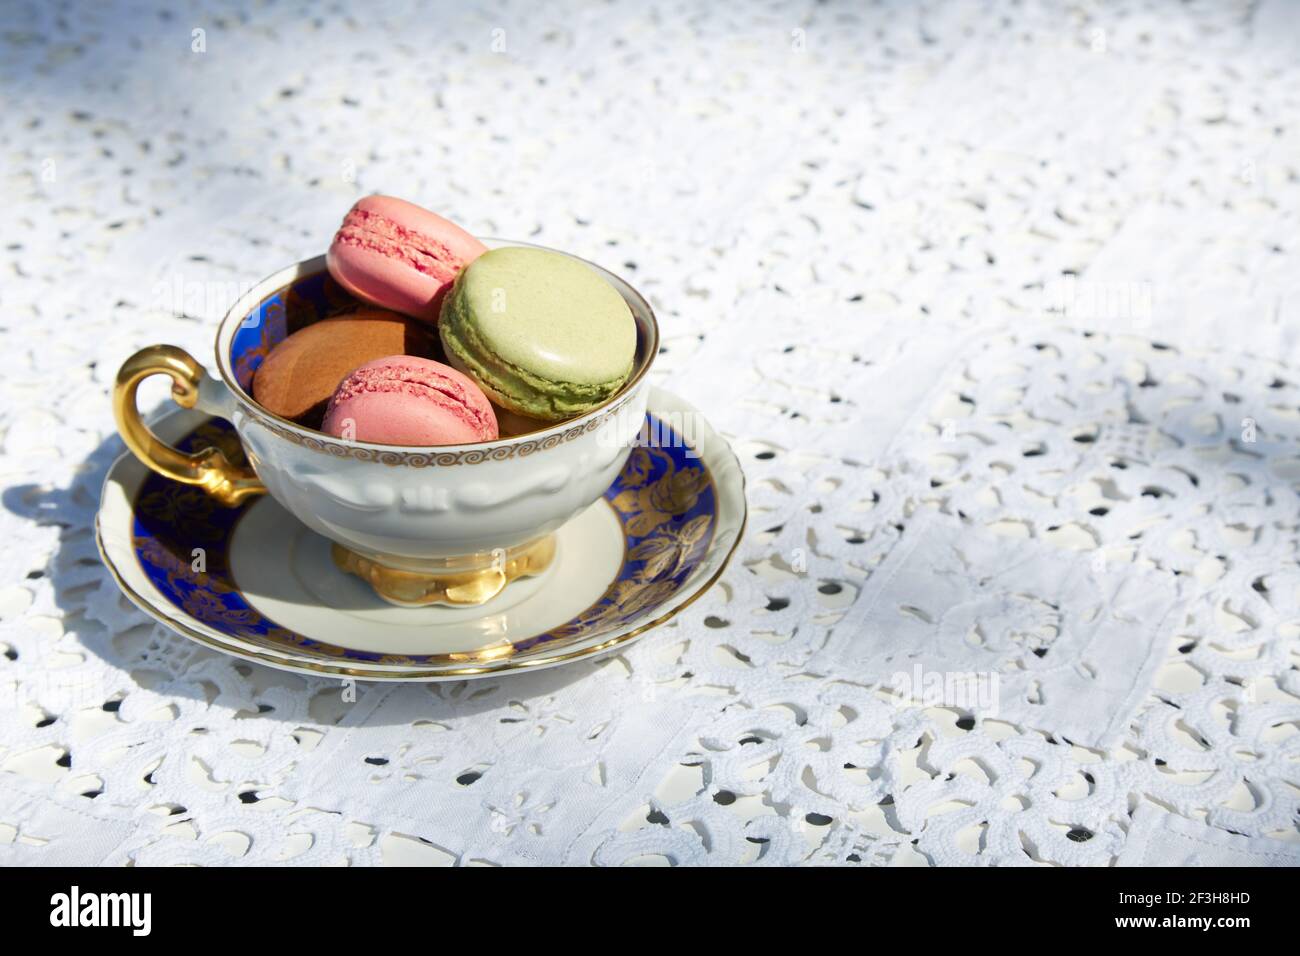 Makronen Kekse in rosa, grün und braun Farben mit Keramik blau und golden Tasse und weiß bestickte Tischdecke Stockfoto